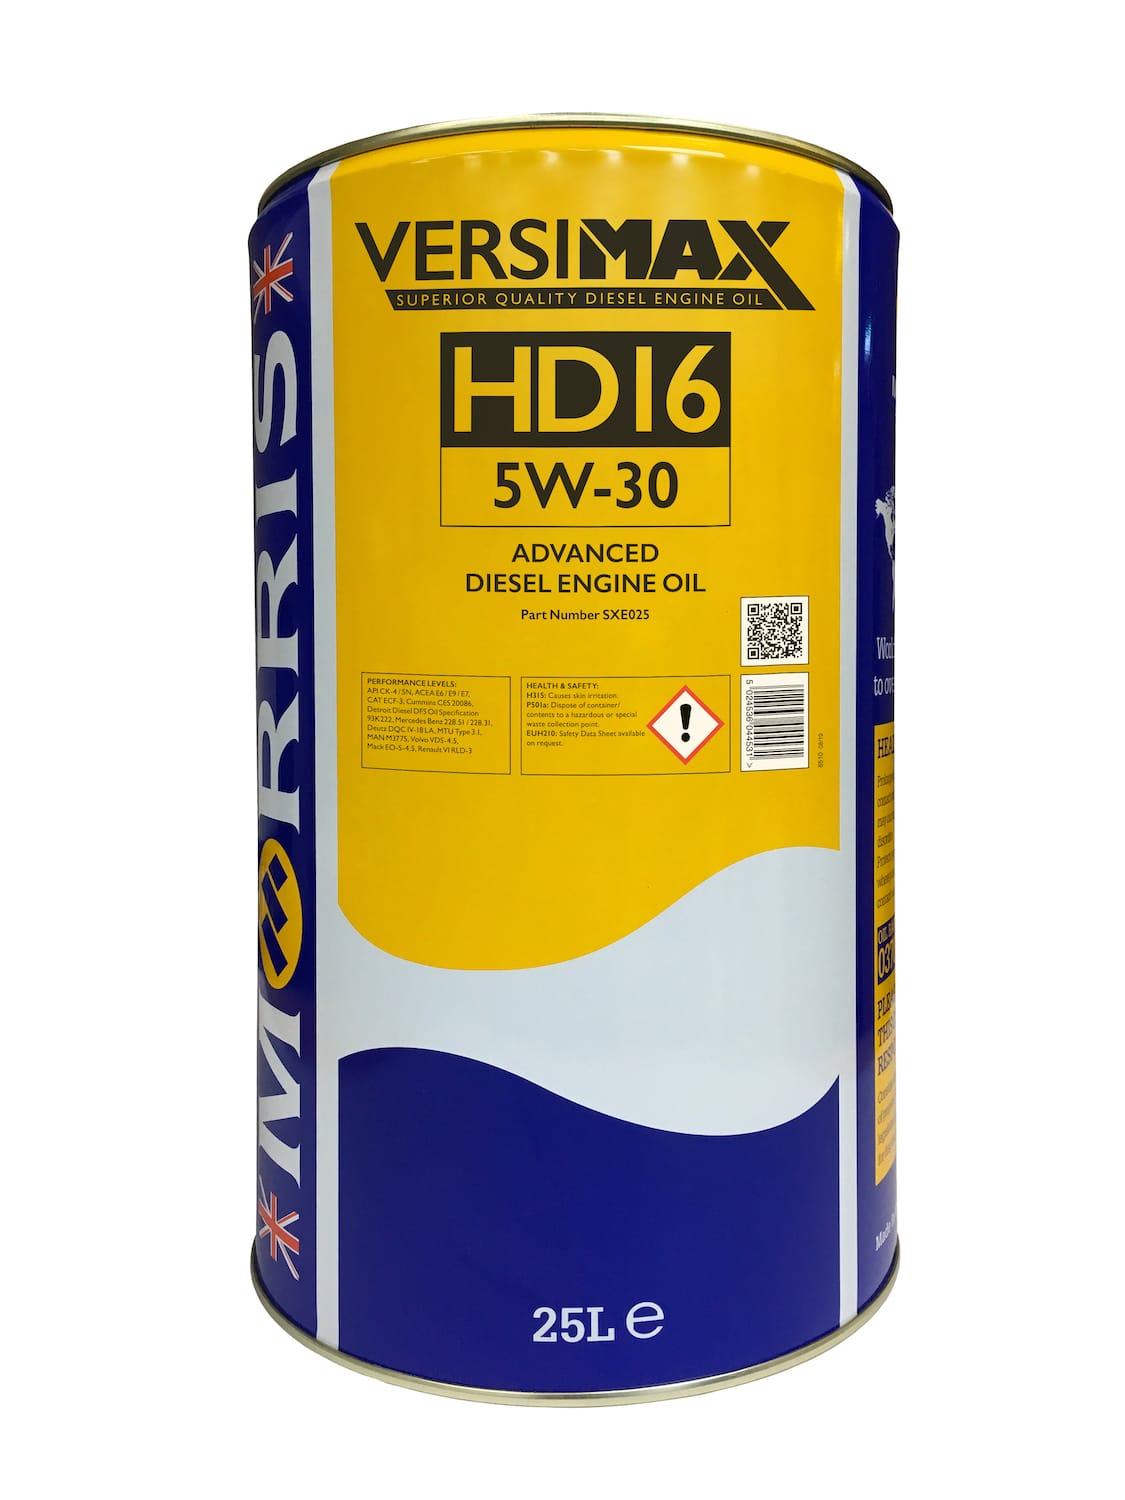 Versimax HD16 5W-30